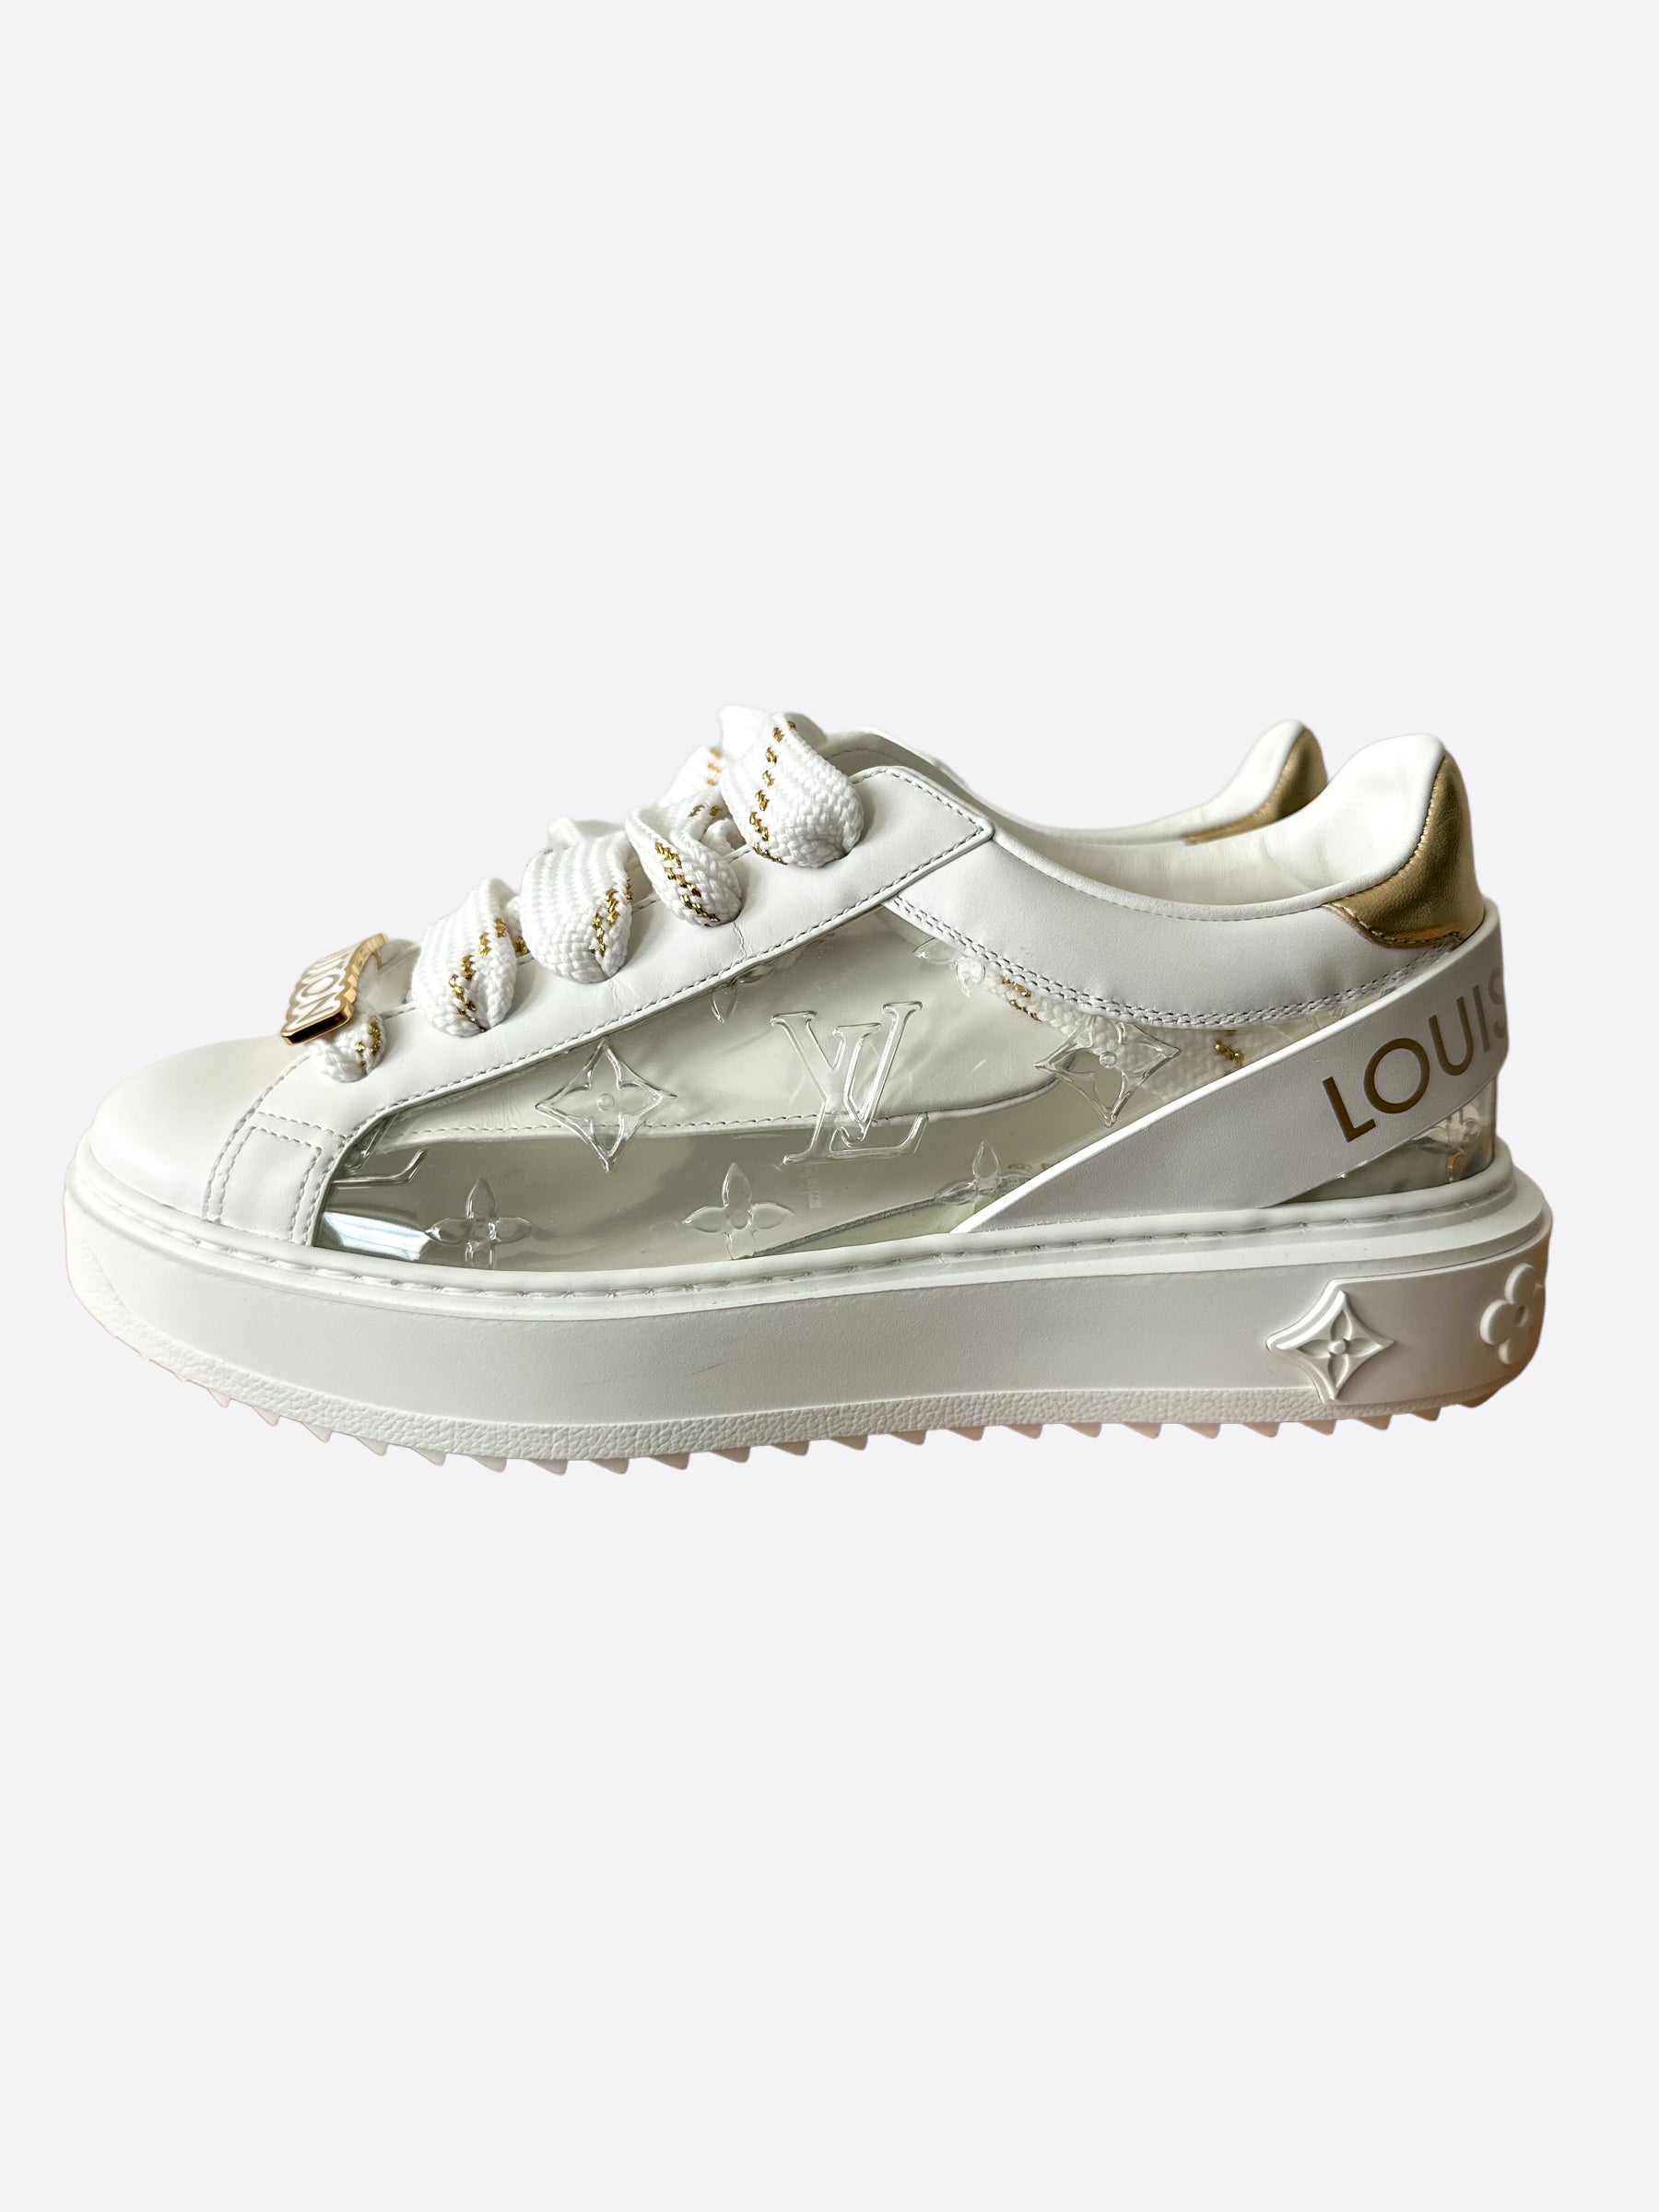 Louis Vuitton Drops Transparent Time Out Sneaker